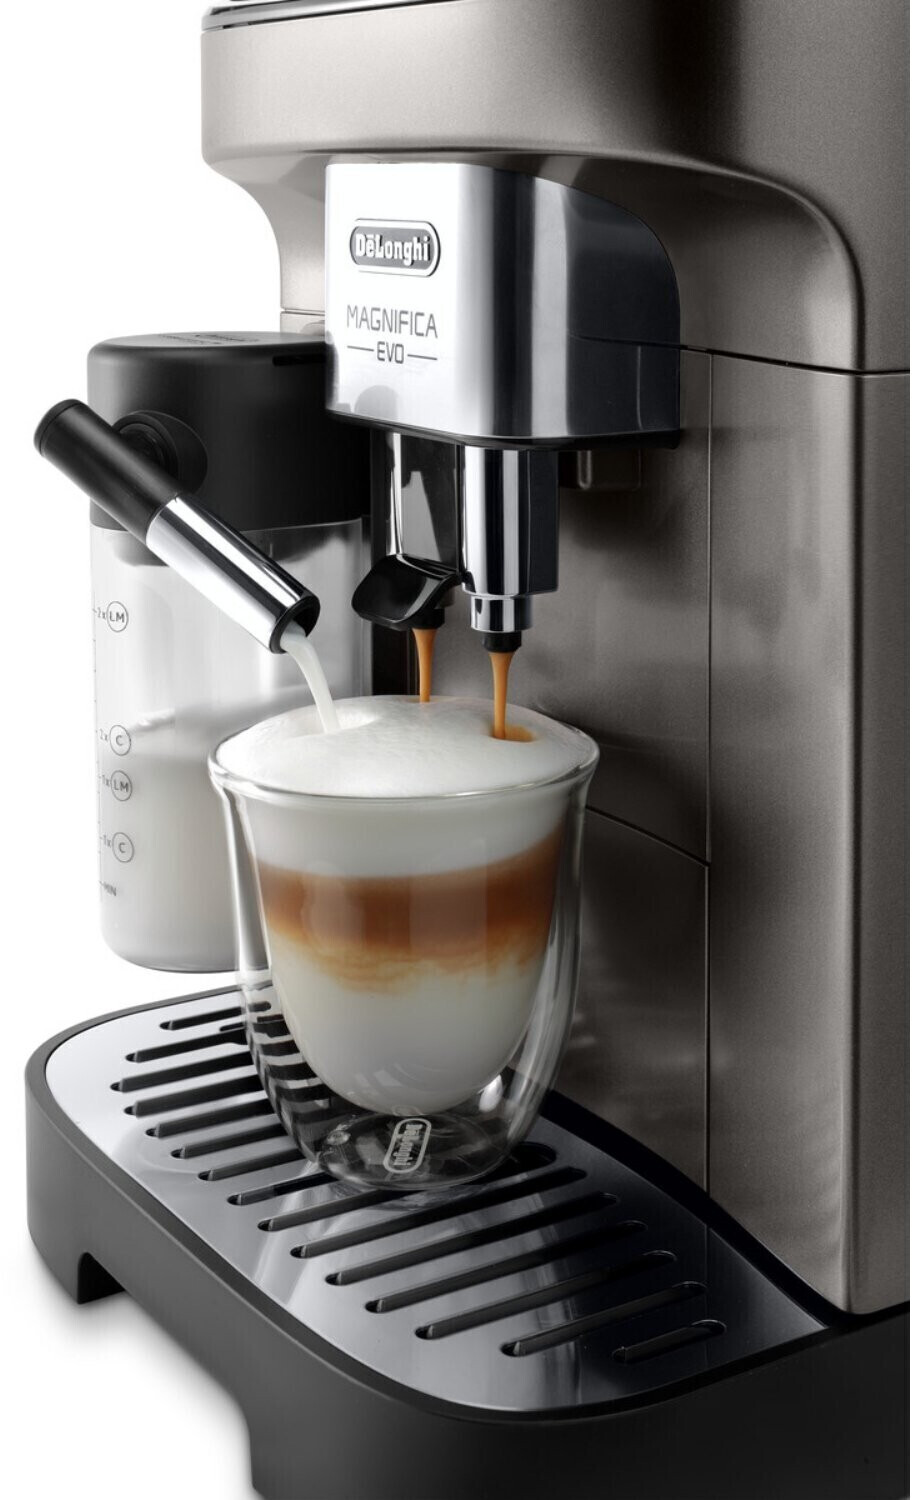 Cafetera Delonghi Superautomática Magnifica Evo Latte 15 bares DELONGHI